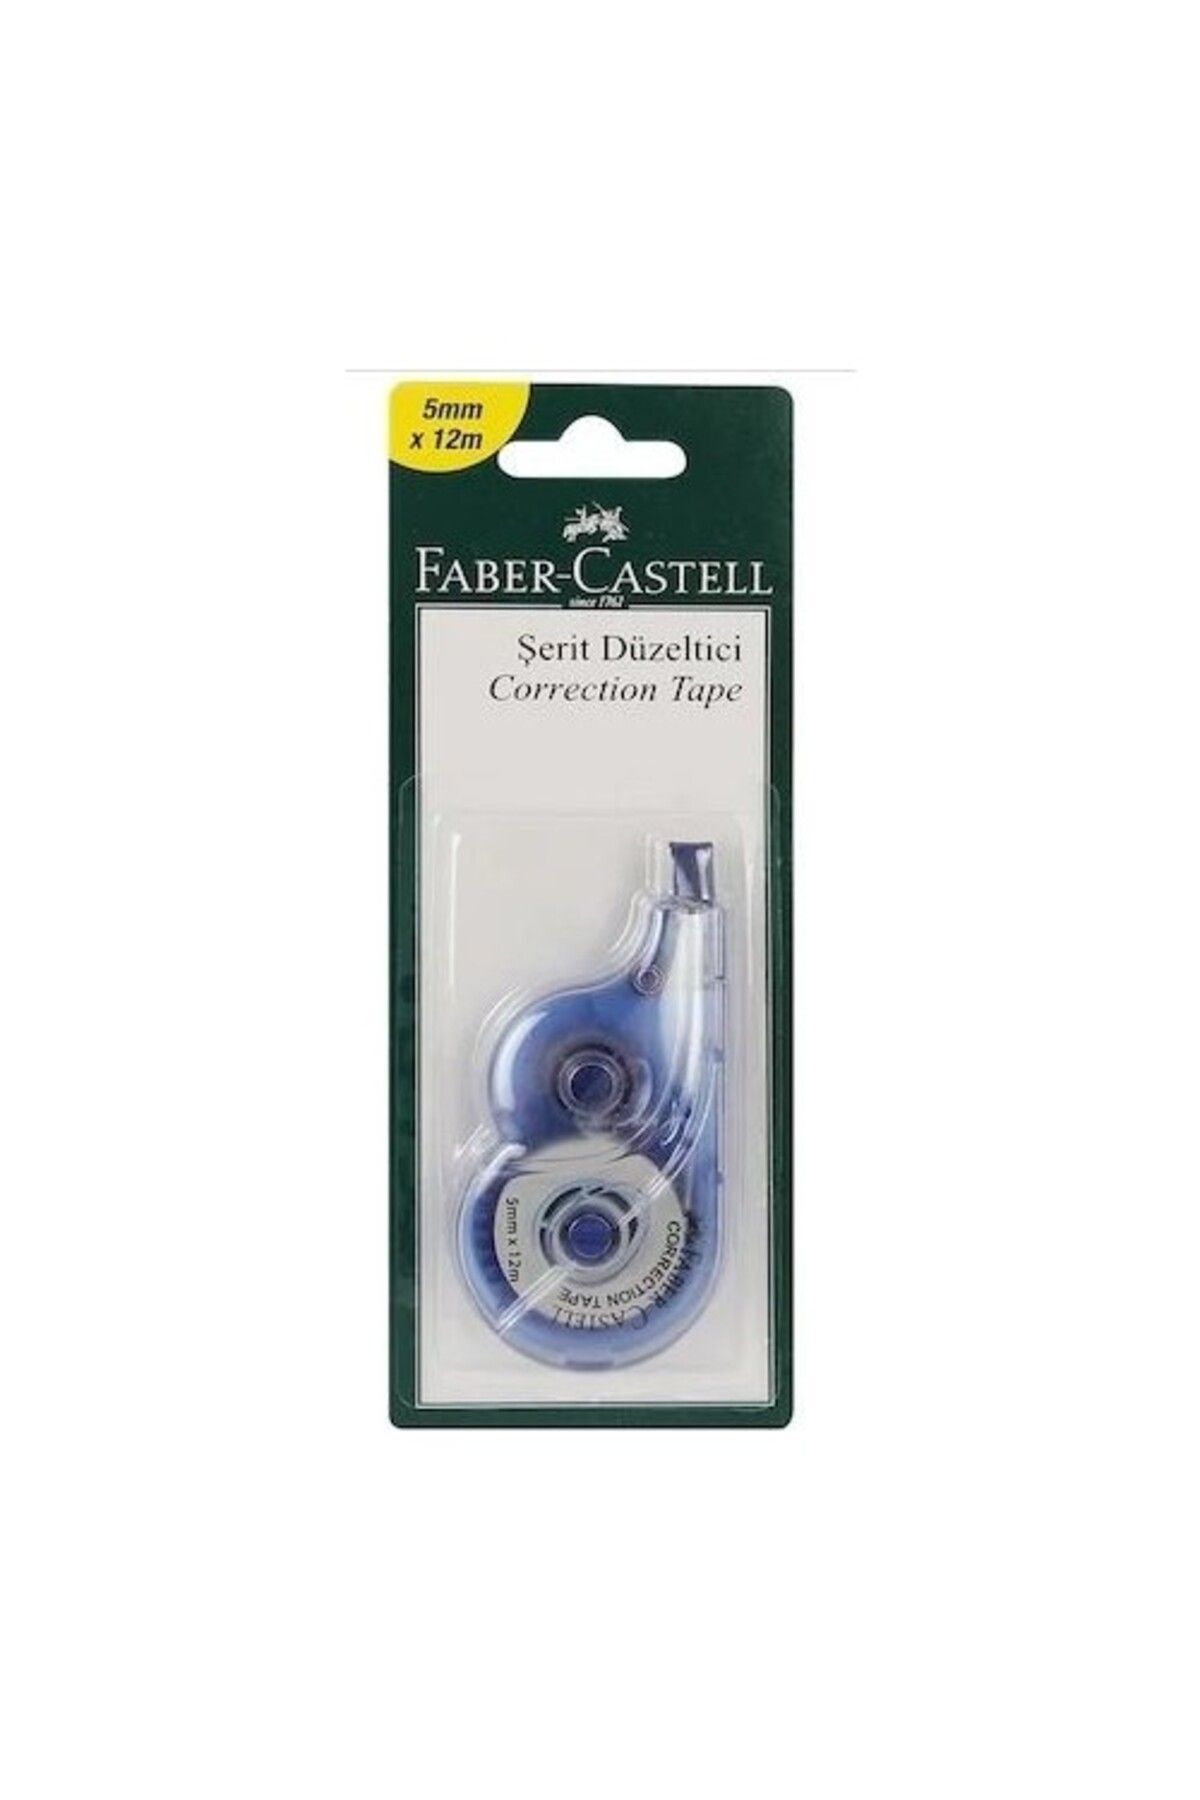 Faber Castell Faber-Castell Şerit Düzeltici 5mmx12m